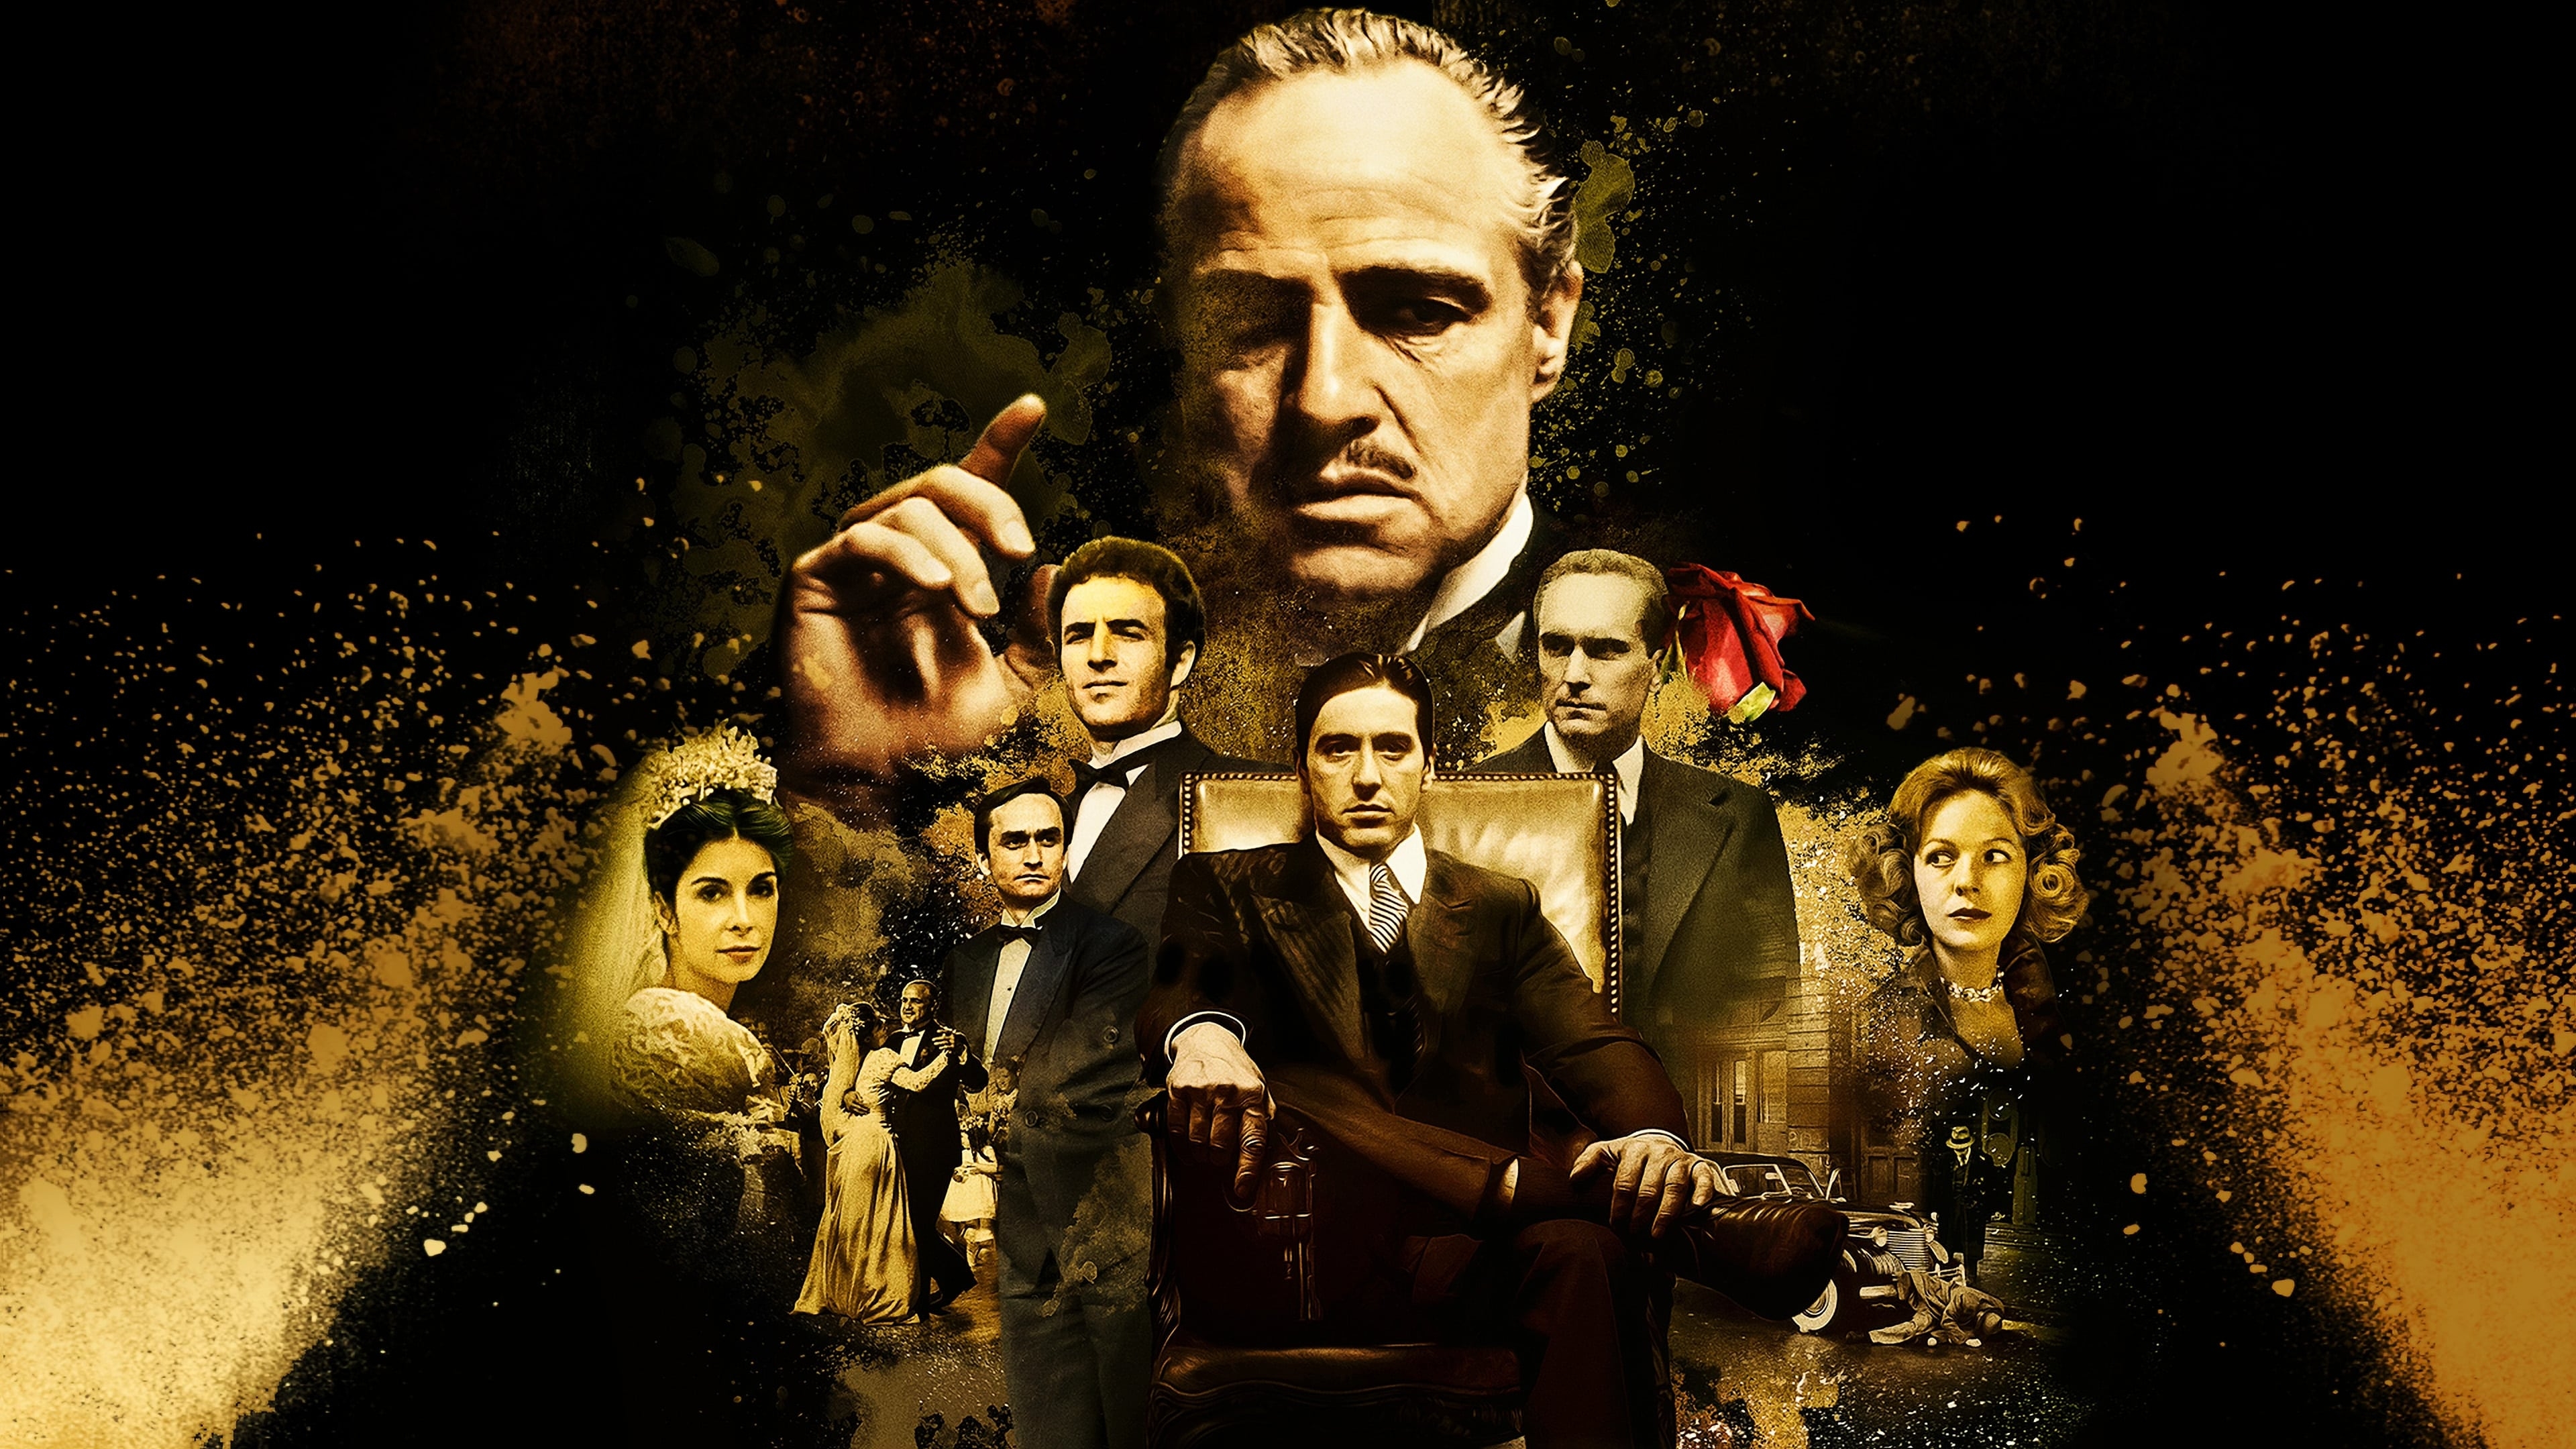 HD wallpaper, Movie Poster, The Godfather, Vito Corleone, Al Pacino, Marlon Brando, Michael Corleone